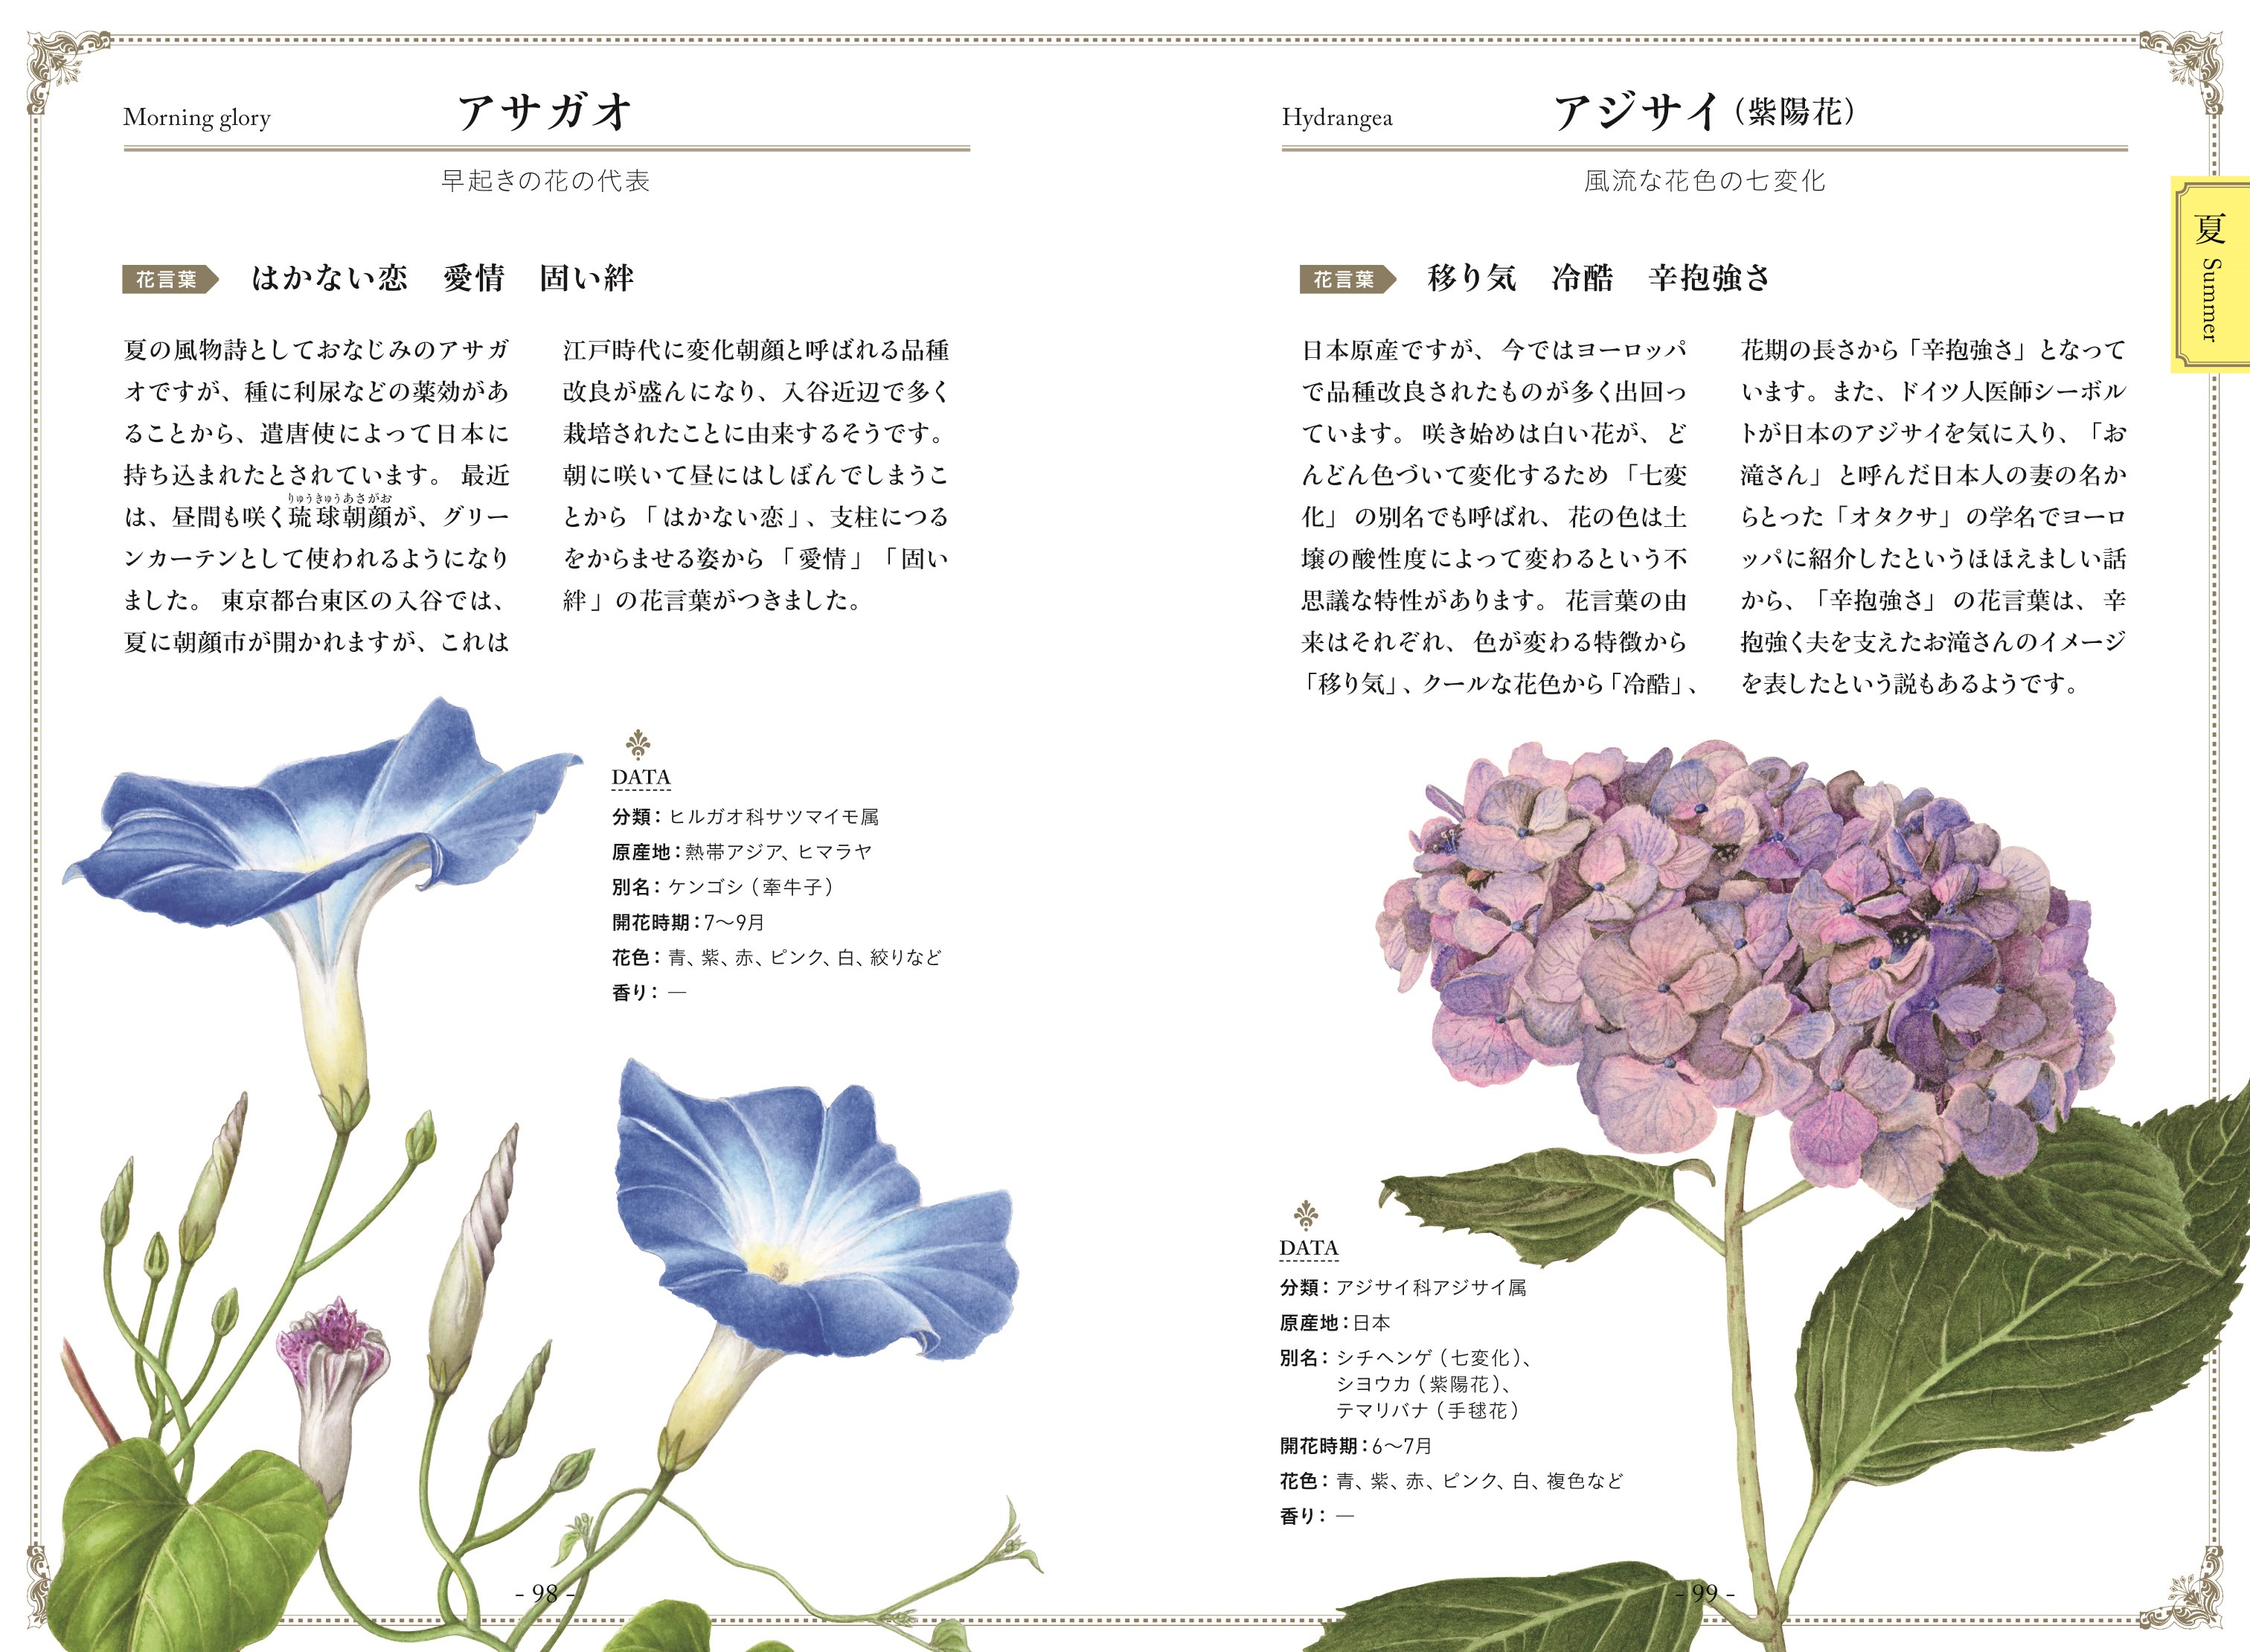 植物画で彩る 美しい花言葉 ナツメ社